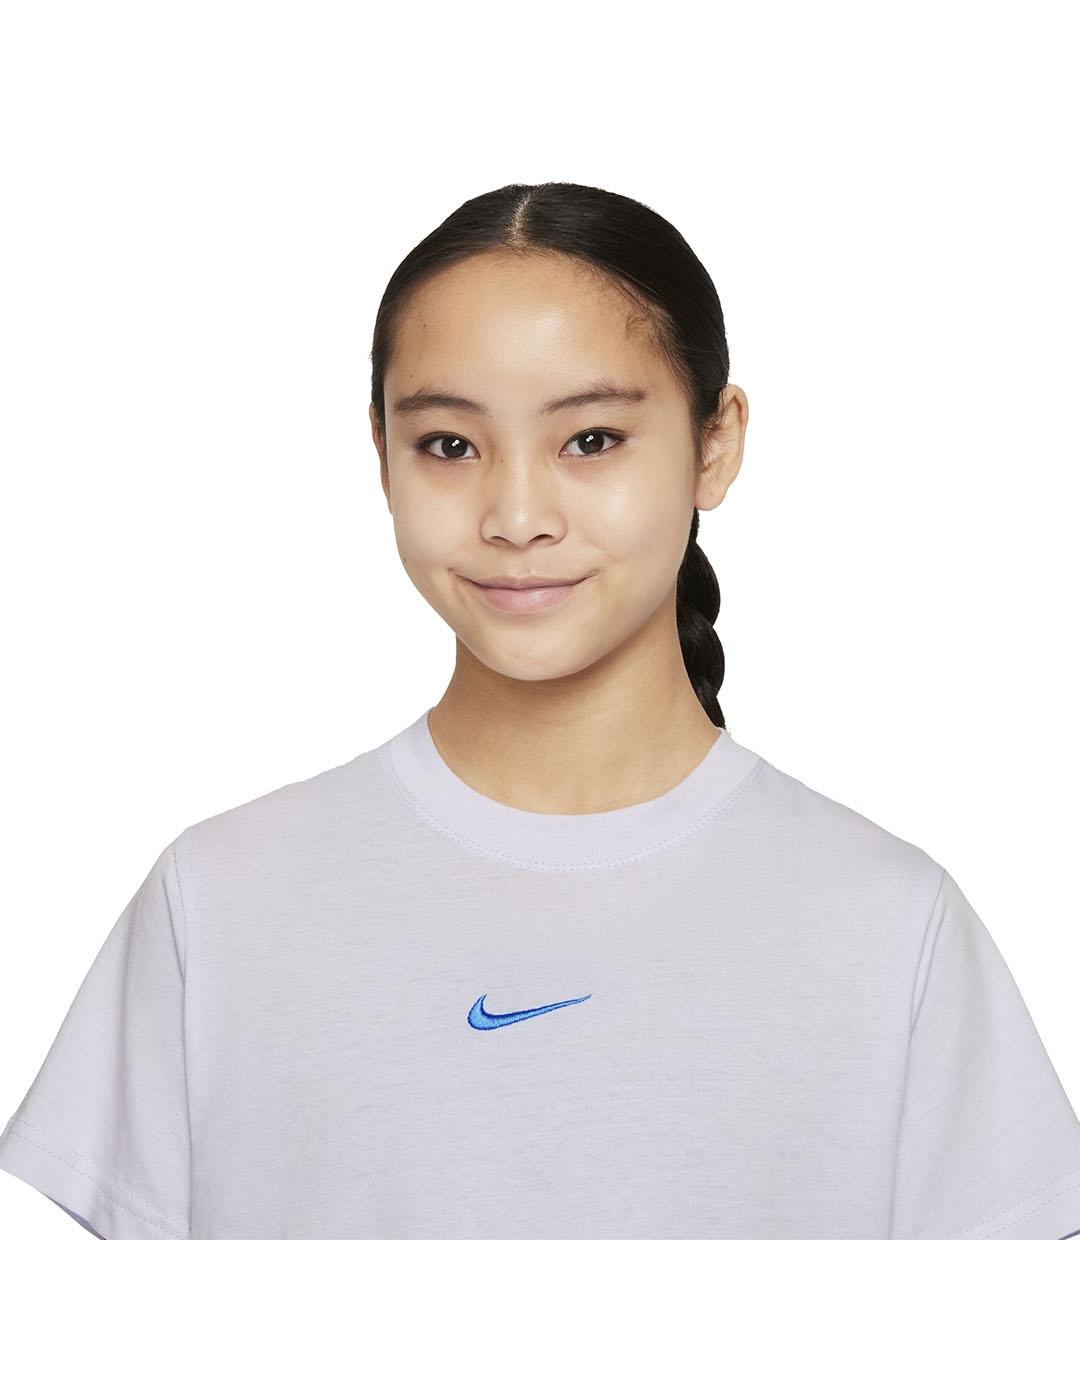 Camiseta Niña Nike Nsw Tee Celeste